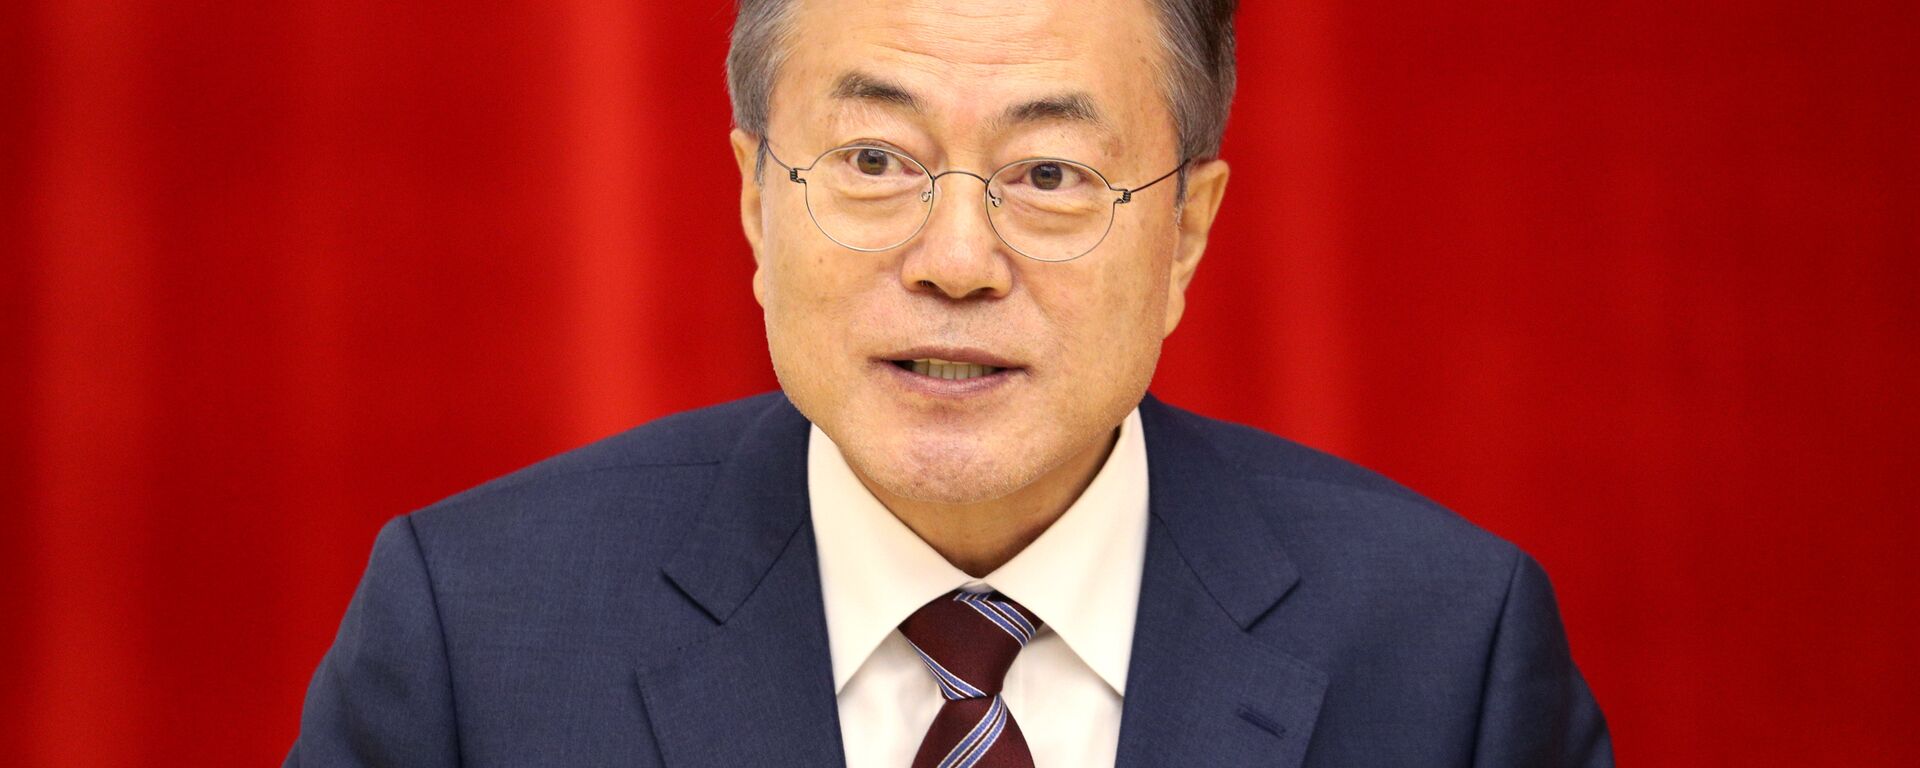 El presidente de Corea del Sur, Moon Jae-in - Sputnik Mundo, 1920, 07.06.2021